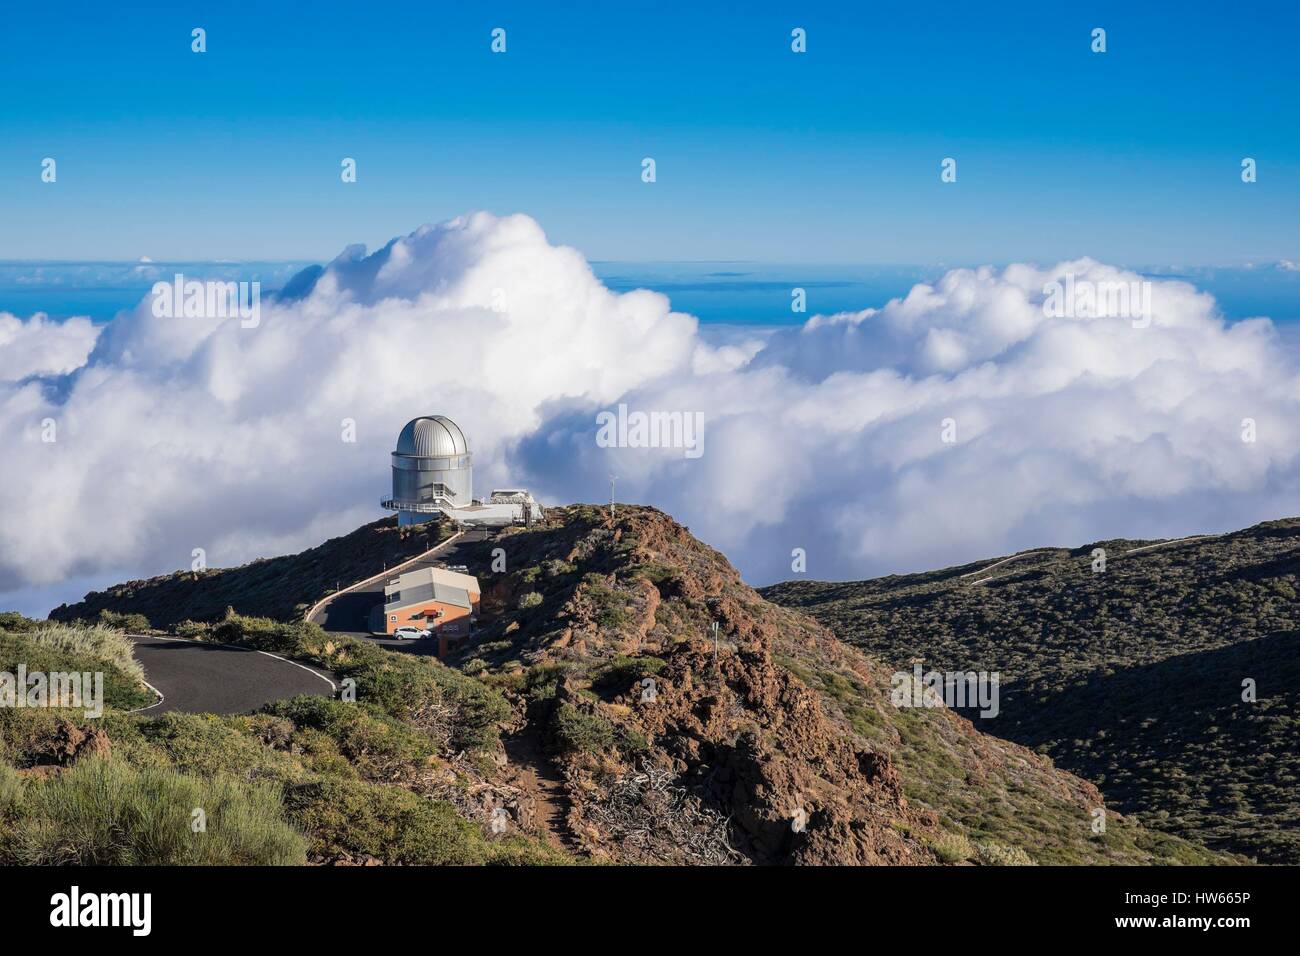 Spanien, Kanarische Inseln, La Palma als Biosphärenreservat von der UNESCO, die Caldera de Taburiente National Park, das Astrophysikalische Observatorium Roque de Los Muchachos, dem höchsten Punkt der Insel (alt: 2426 m), ist einer der besten Orte der Welt für stargazing Stockfoto